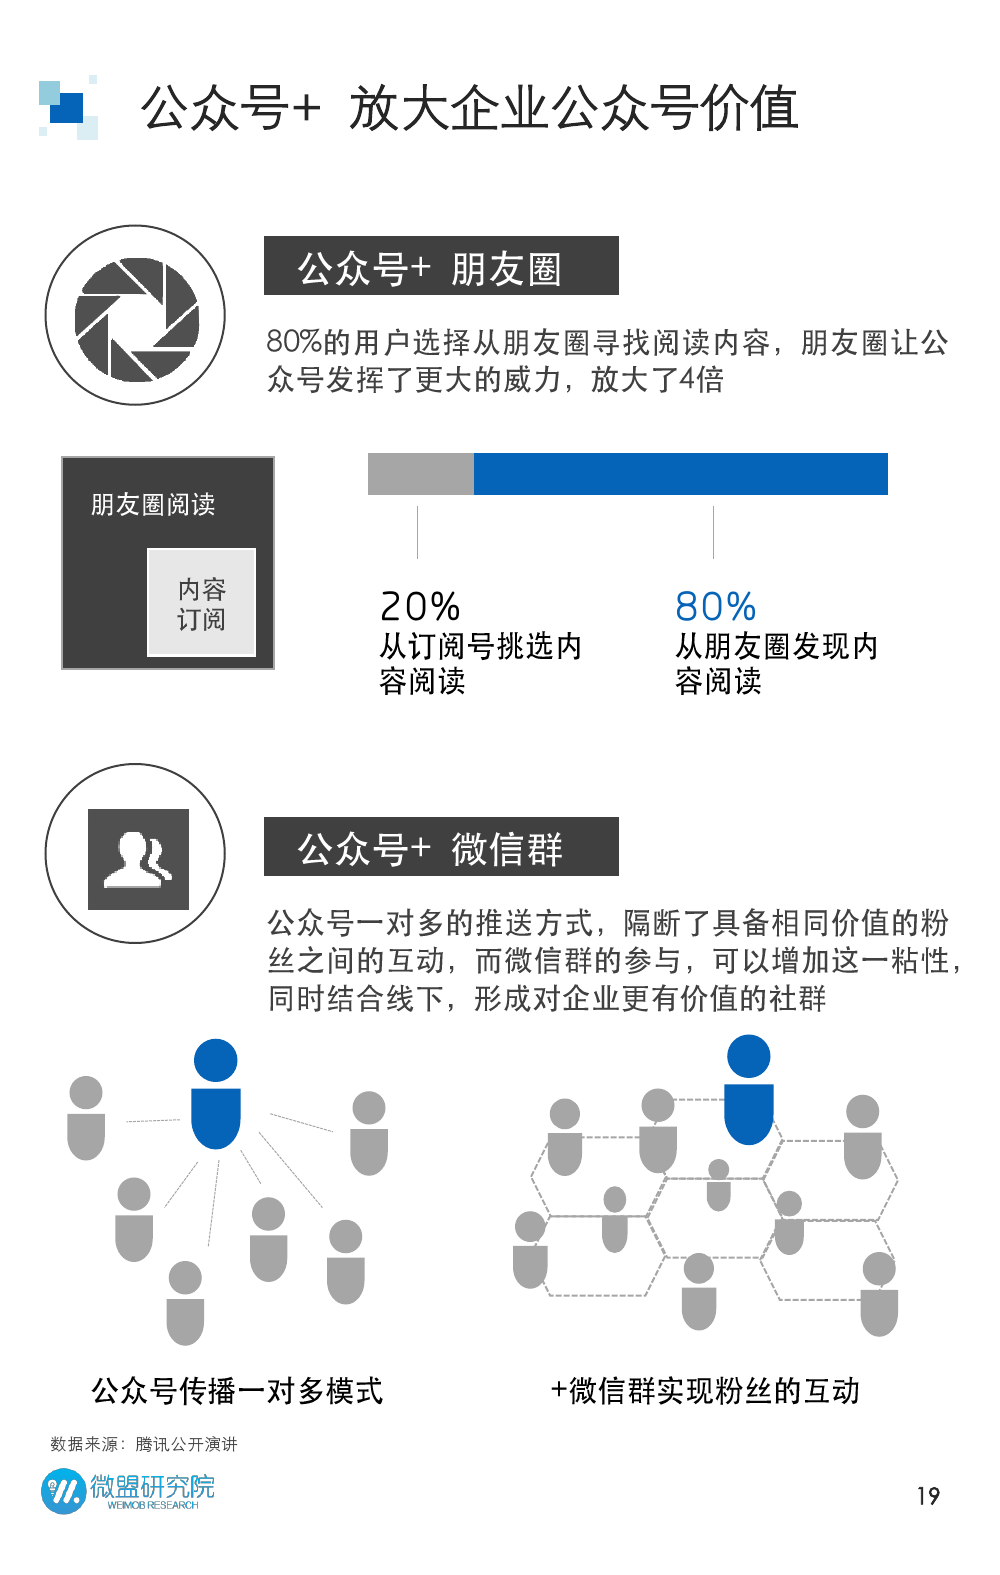 2015年微信营销研究报告_000019